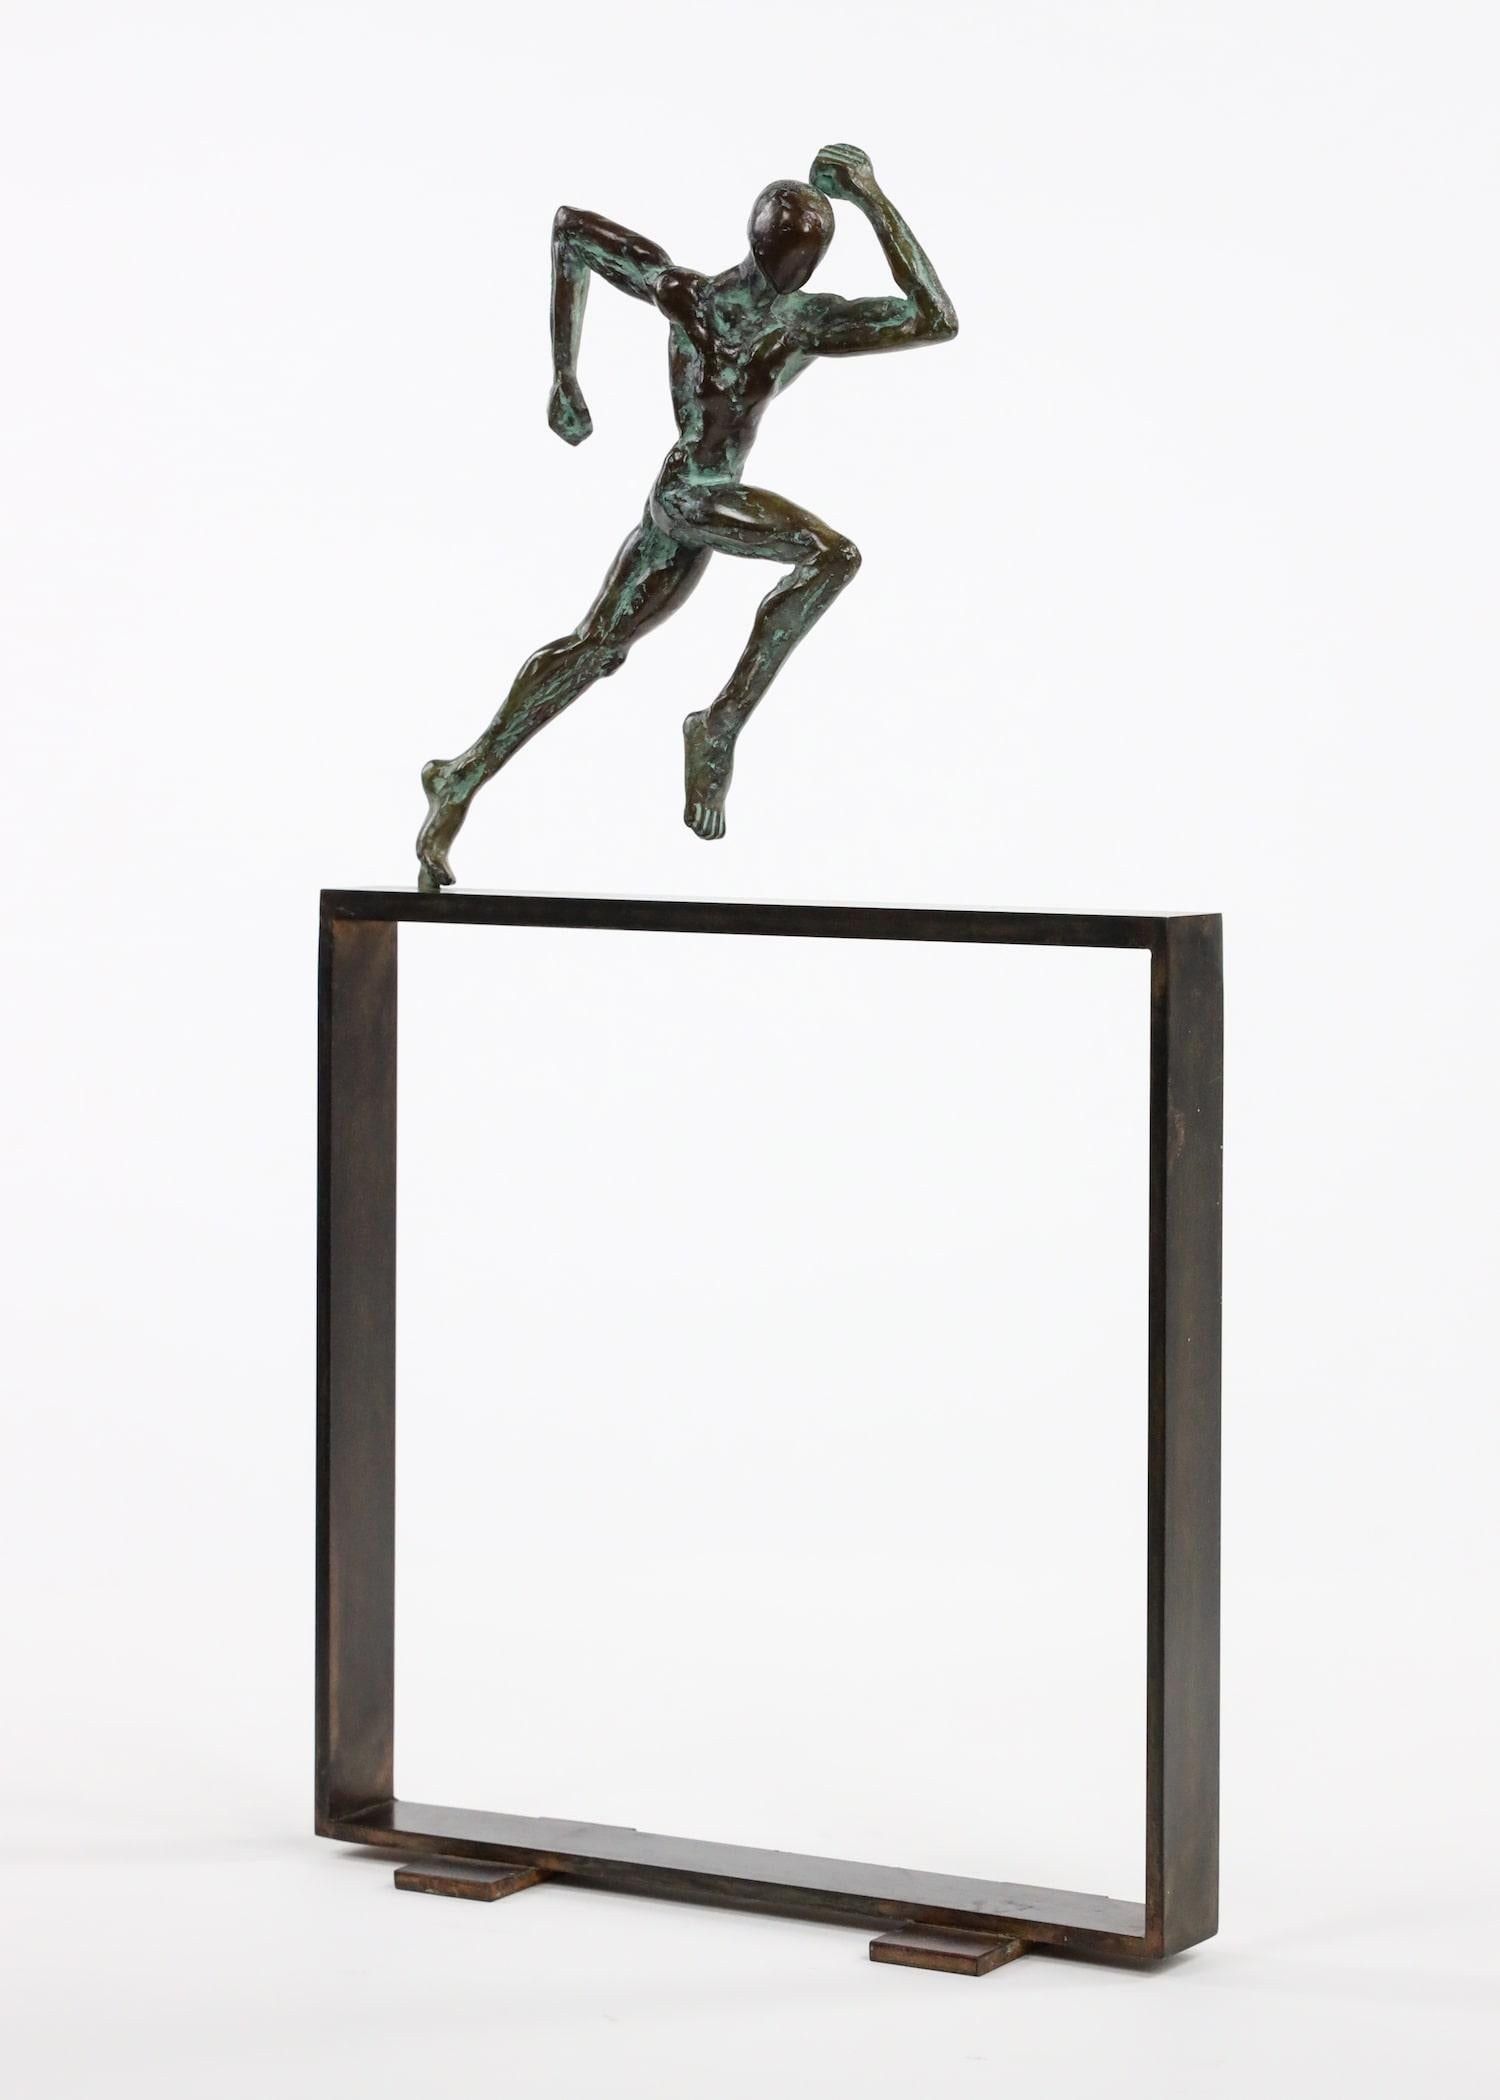 Small Runner "Start" II by Yann Guillon - Athlete Bronze Sculpture